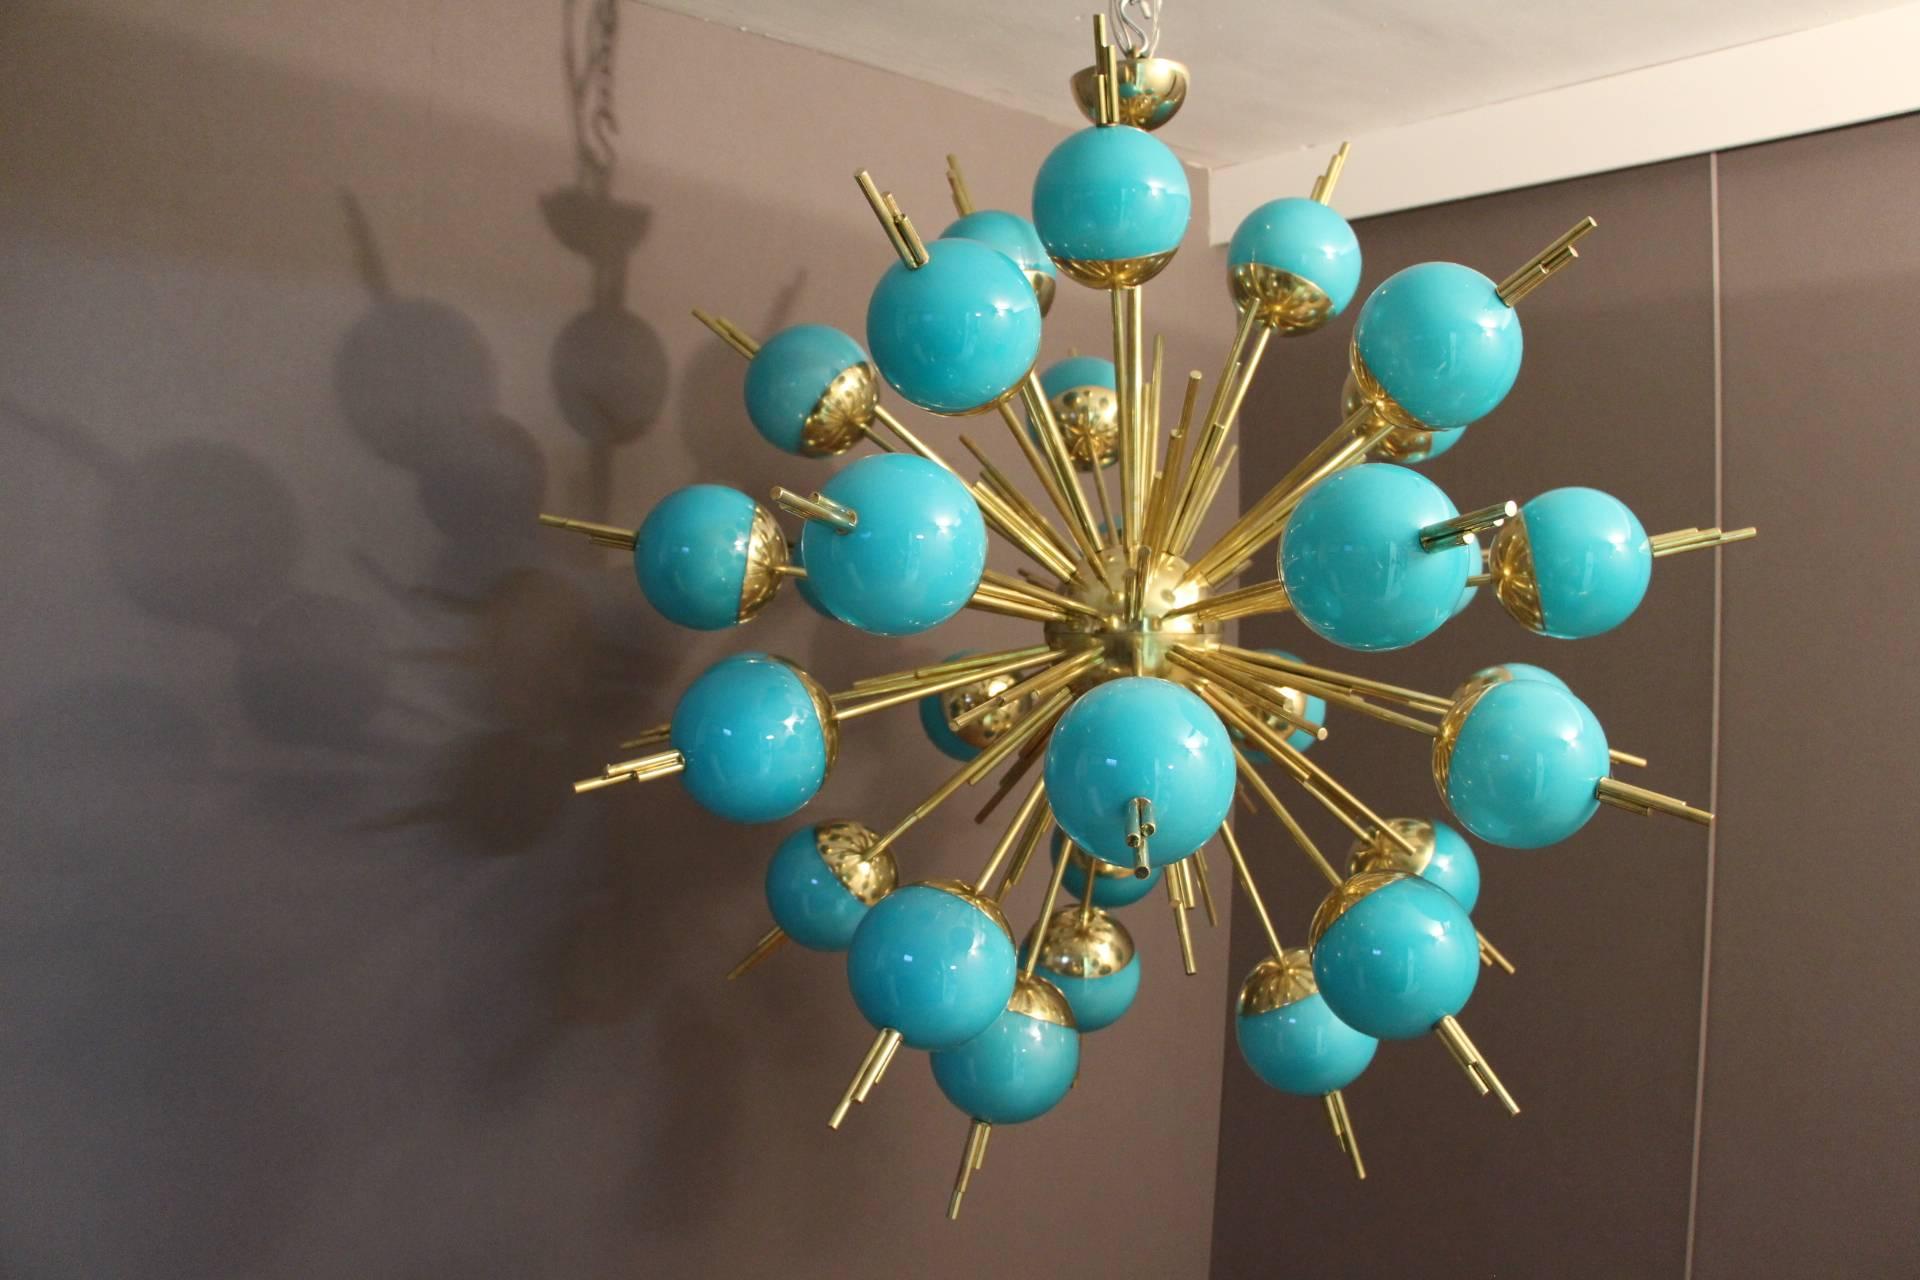 Dieser sehr ungewöhnliche Sputnik-Kronleuchter besteht aus 30 türkisfarbenen Glaskugeln, die auf Messingstäben montiert sind.
Wenn das Licht eingeschaltet ist, färben sich die türkisfarbenen Kugeln hellblau und sie ist immer noch wunderschön.
Für